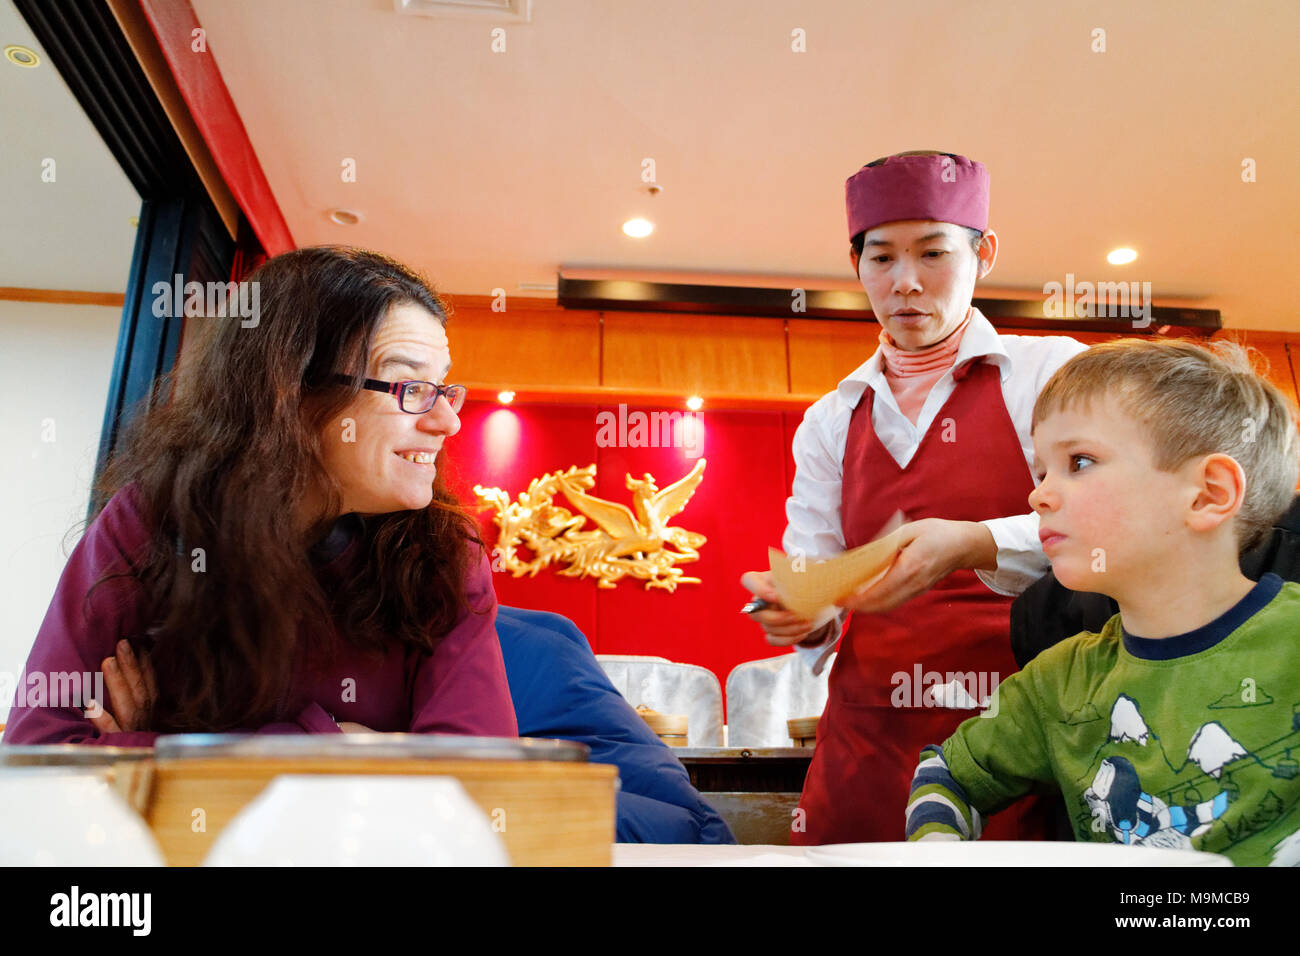 Una madre la trasmissione IR al suo bambino di 5 anni come piatti dim sum sono serviti in un ristorante cinese Foto Stock